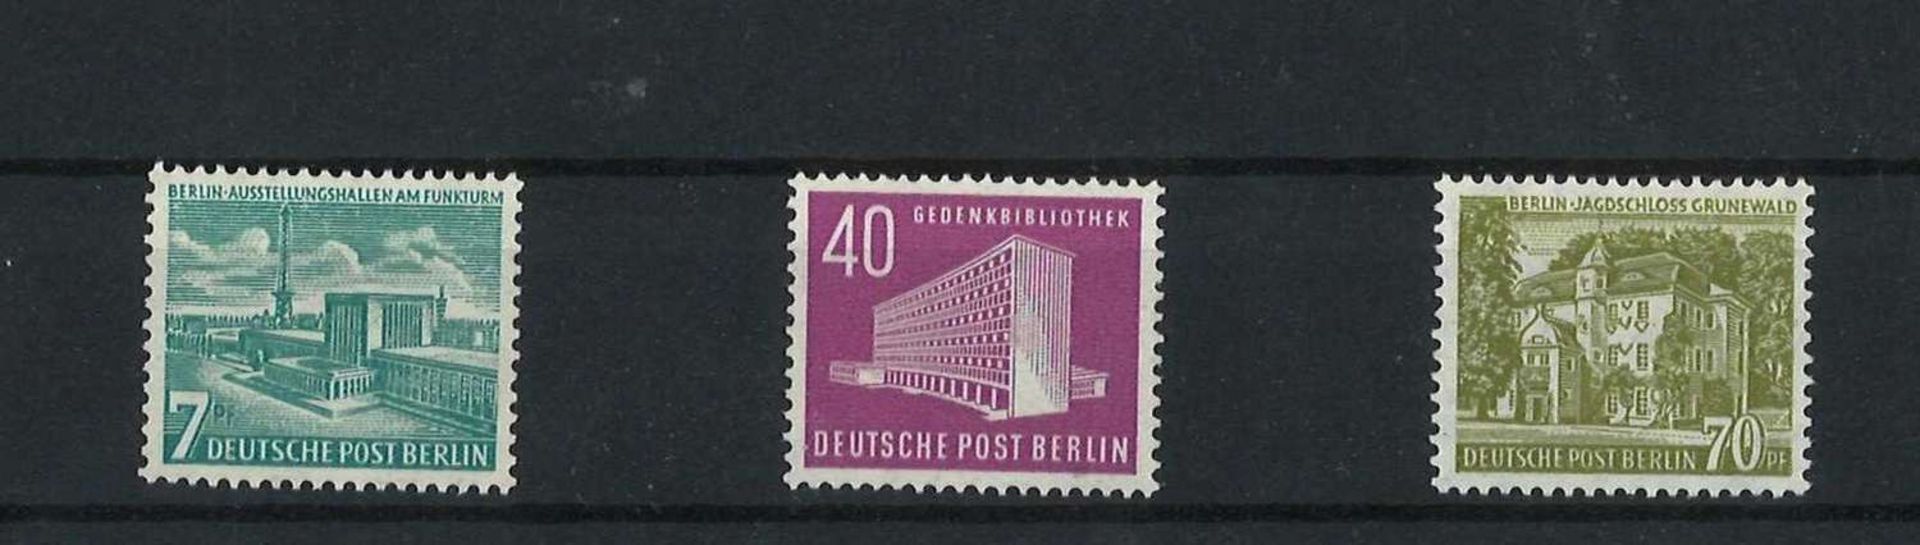 BRD Berlin, 1954, MI 121 - 123, Freimarken Berliner Bauten, postfrischBerlin, 1954, MI 121 - 123,